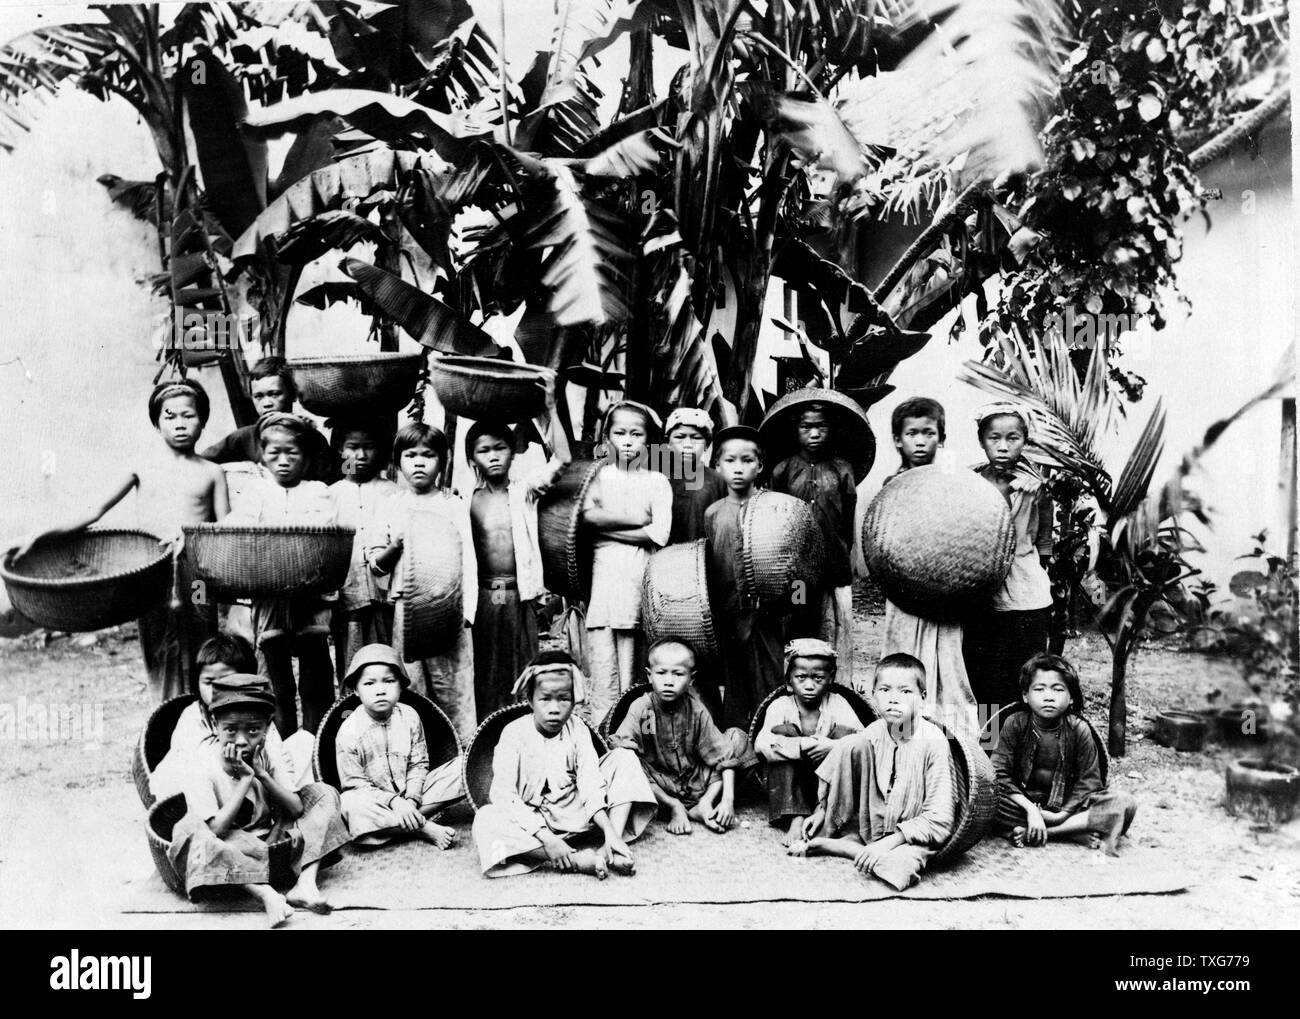 Les enfants avec des paniers posés sous un palmier, Saigon - Sud Vietnam Saigon était la capitale et centre commercial de la colonisation française en Indochine. Banque D'Images